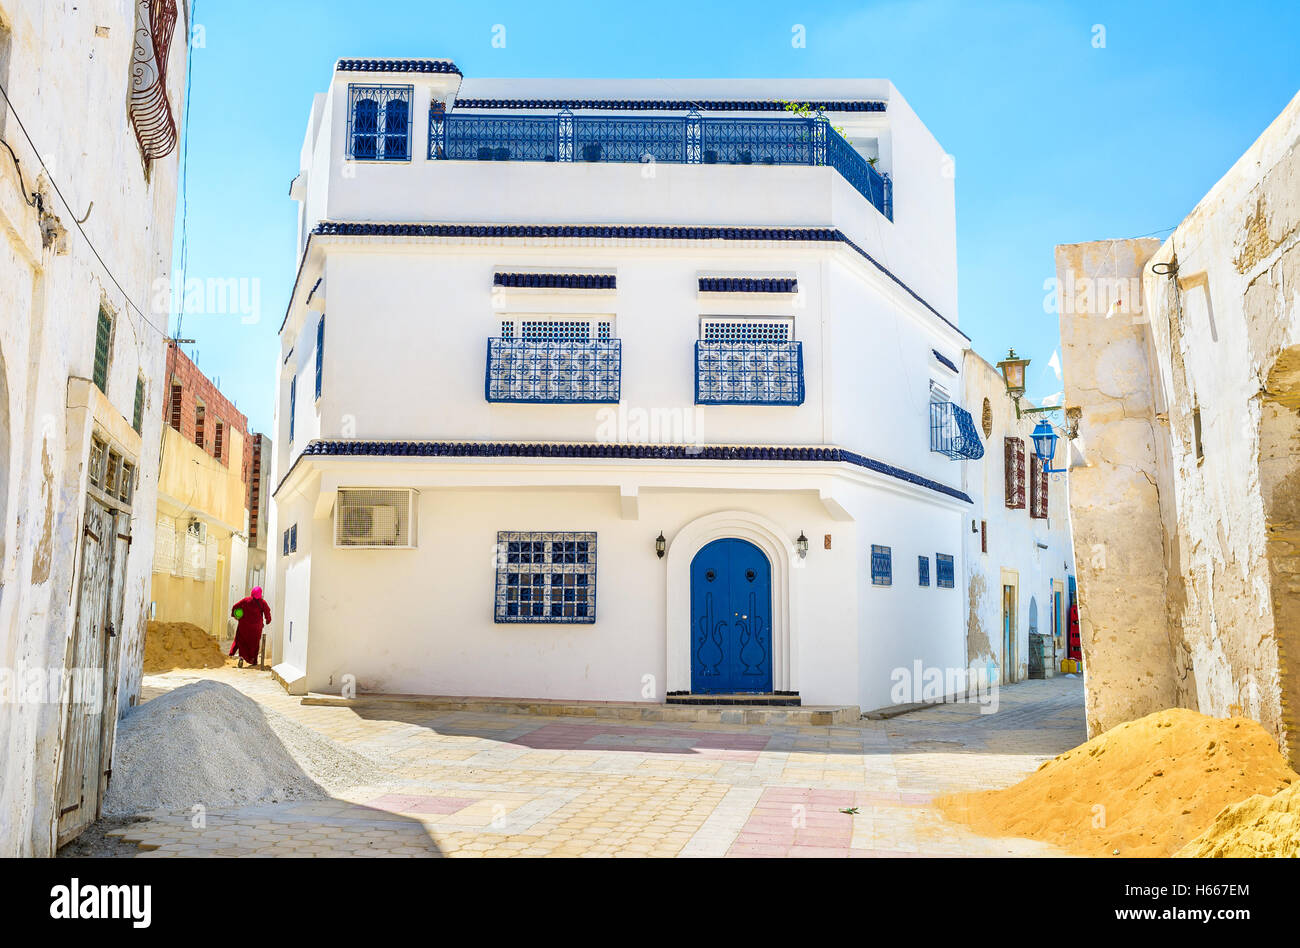 La grande casa, come per la vecchia medina araba, all'incrocio, Kairouan, Tunisia. Foto Stock